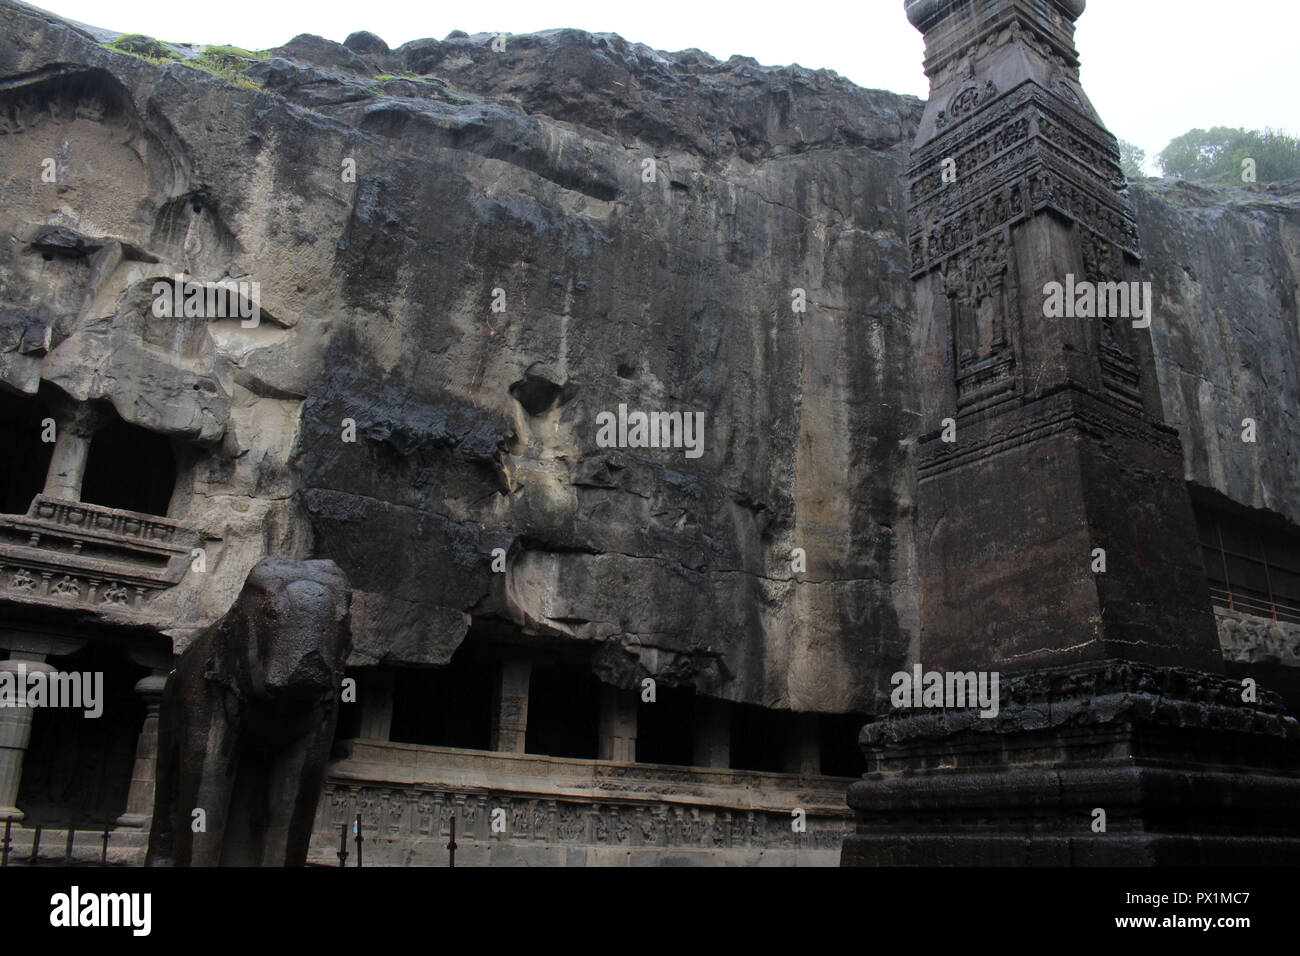 La merveille de Kailasa de les grottes d'Ellora, le rock-cut temple monolithique. Prises en Inde, août 2018. Banque D'Images